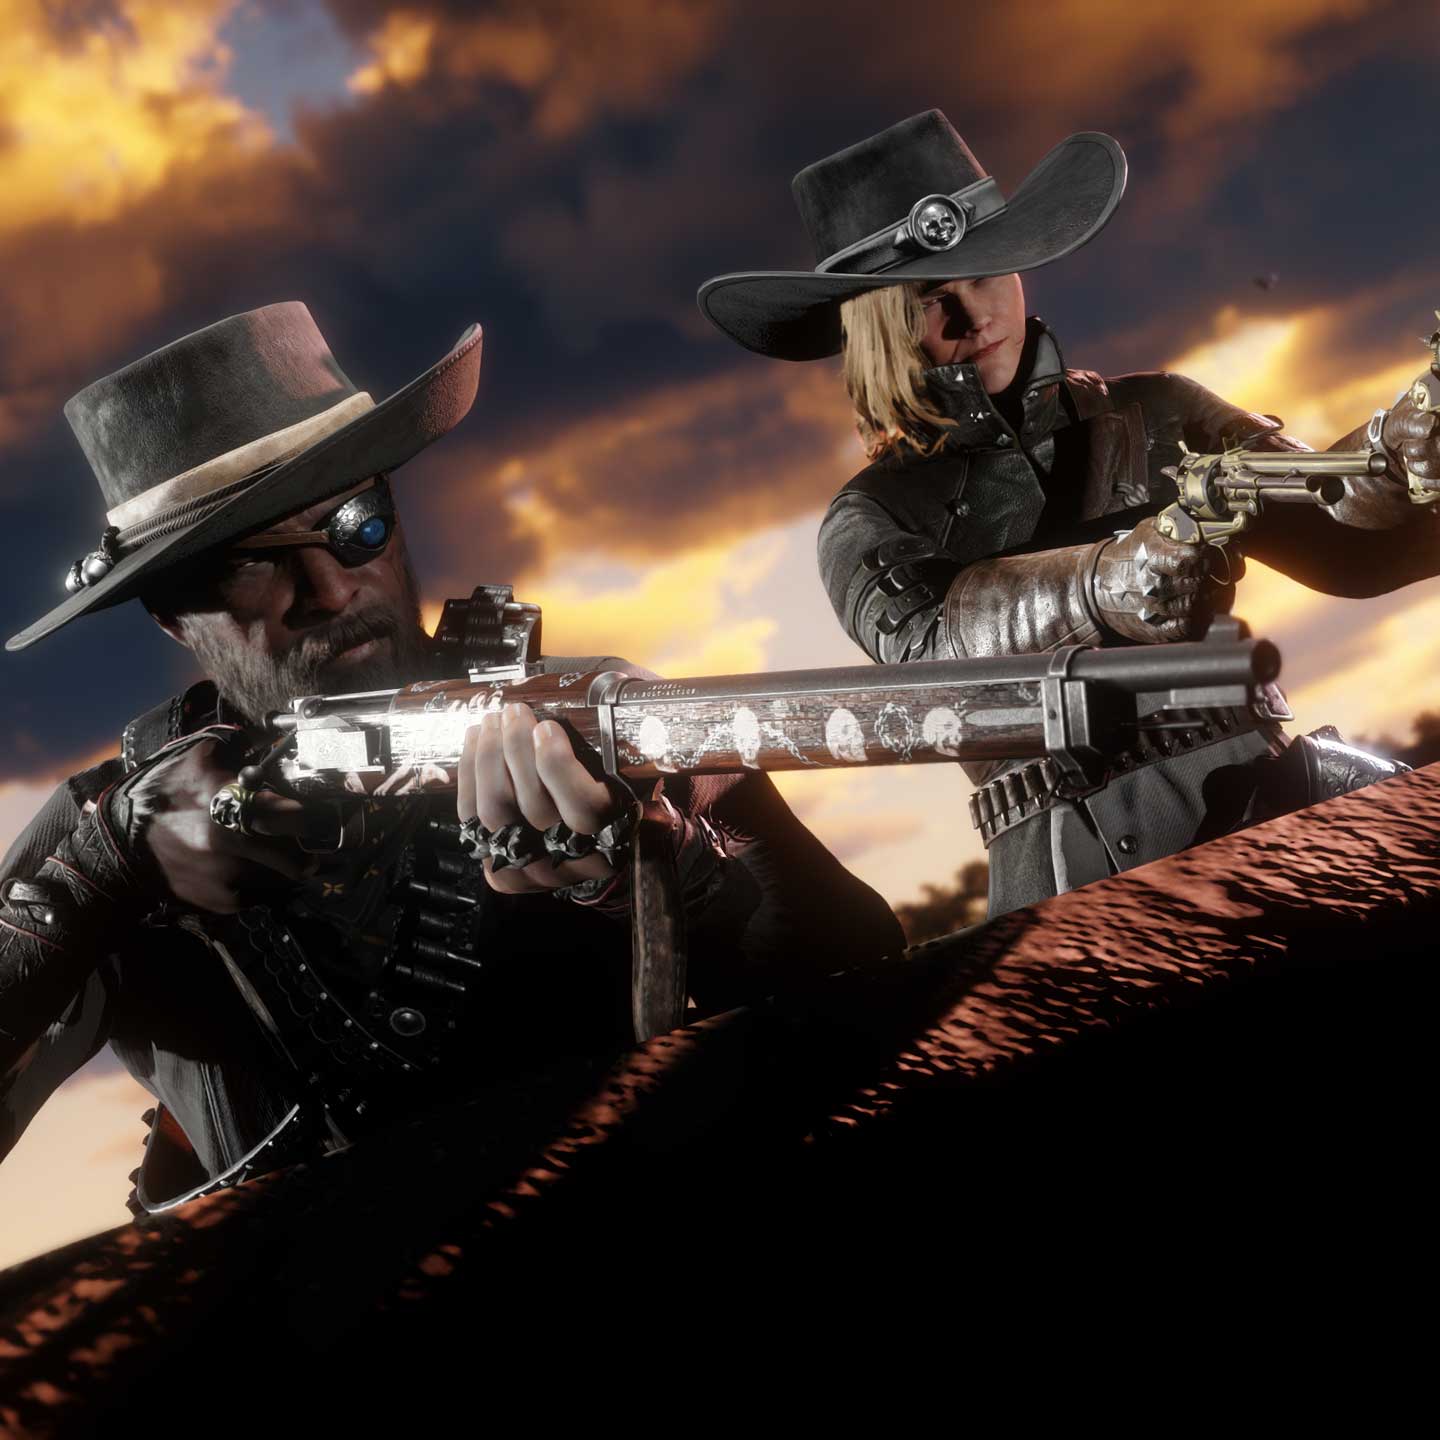 Empieza el nuevo año con bonificaciones en misiones de La tierra de las  oportunidades, A las armas, asaltos a guaridas y las series destacadas -  Rockstar Games